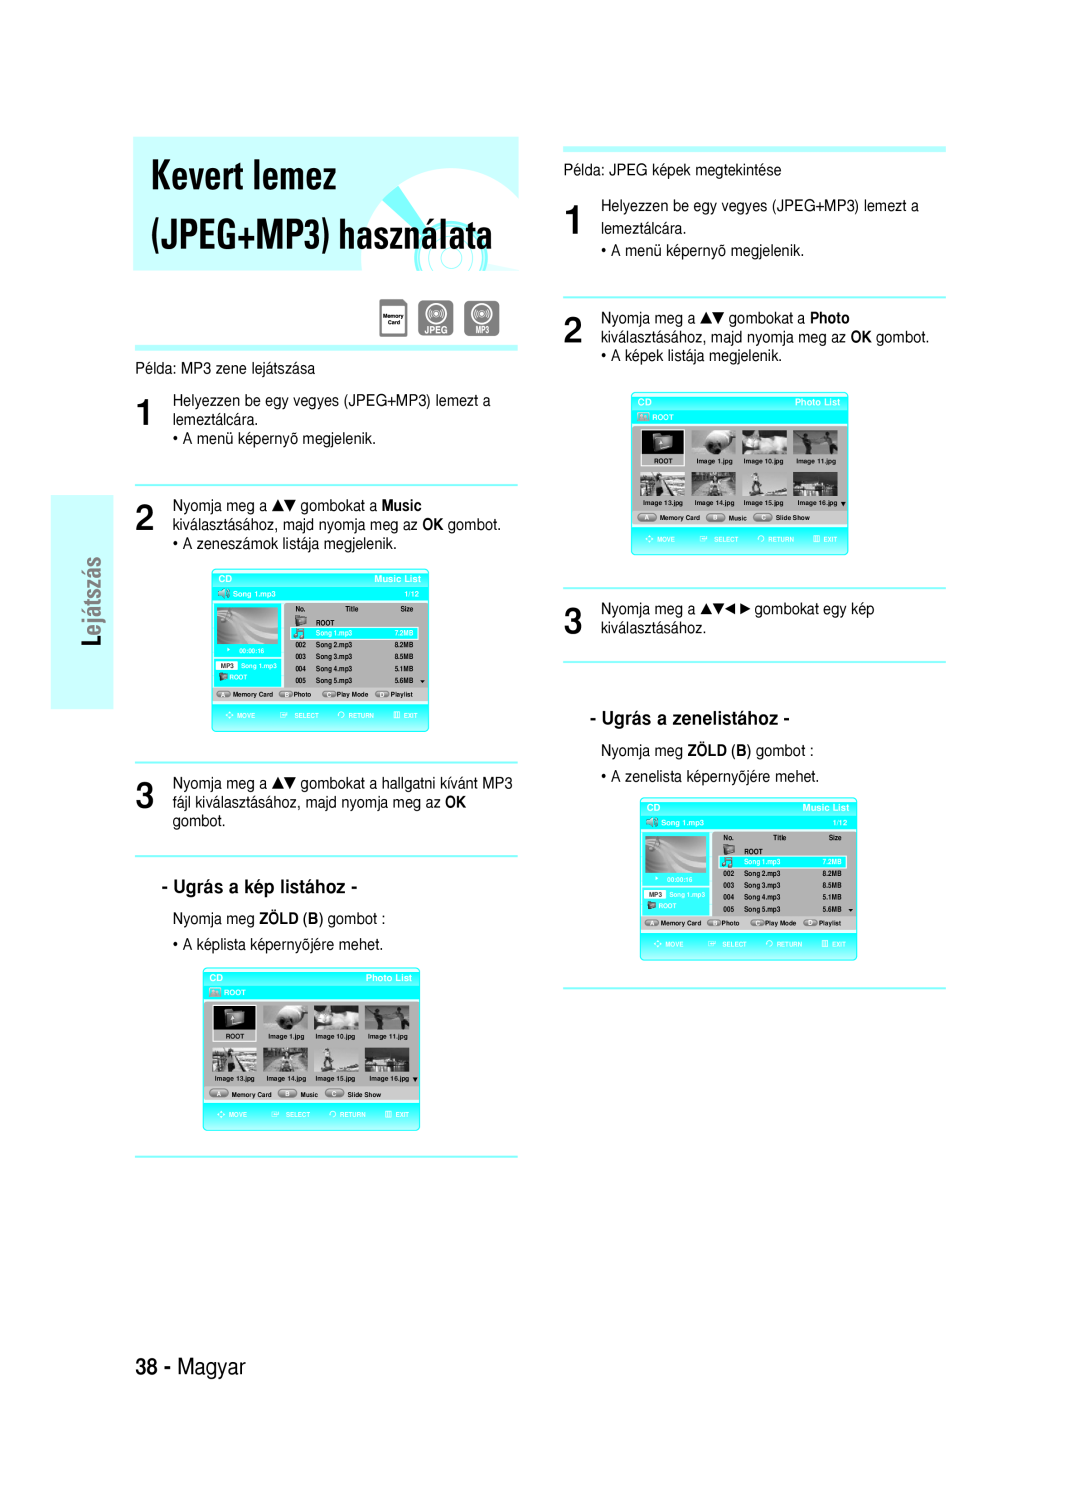 Samsung BD-P1000/XEO manual Kevert lemez JPEG+MP3 használata, Magyar, ejátszás, Ugrás a kép listához, Ugrás a zenelistához 